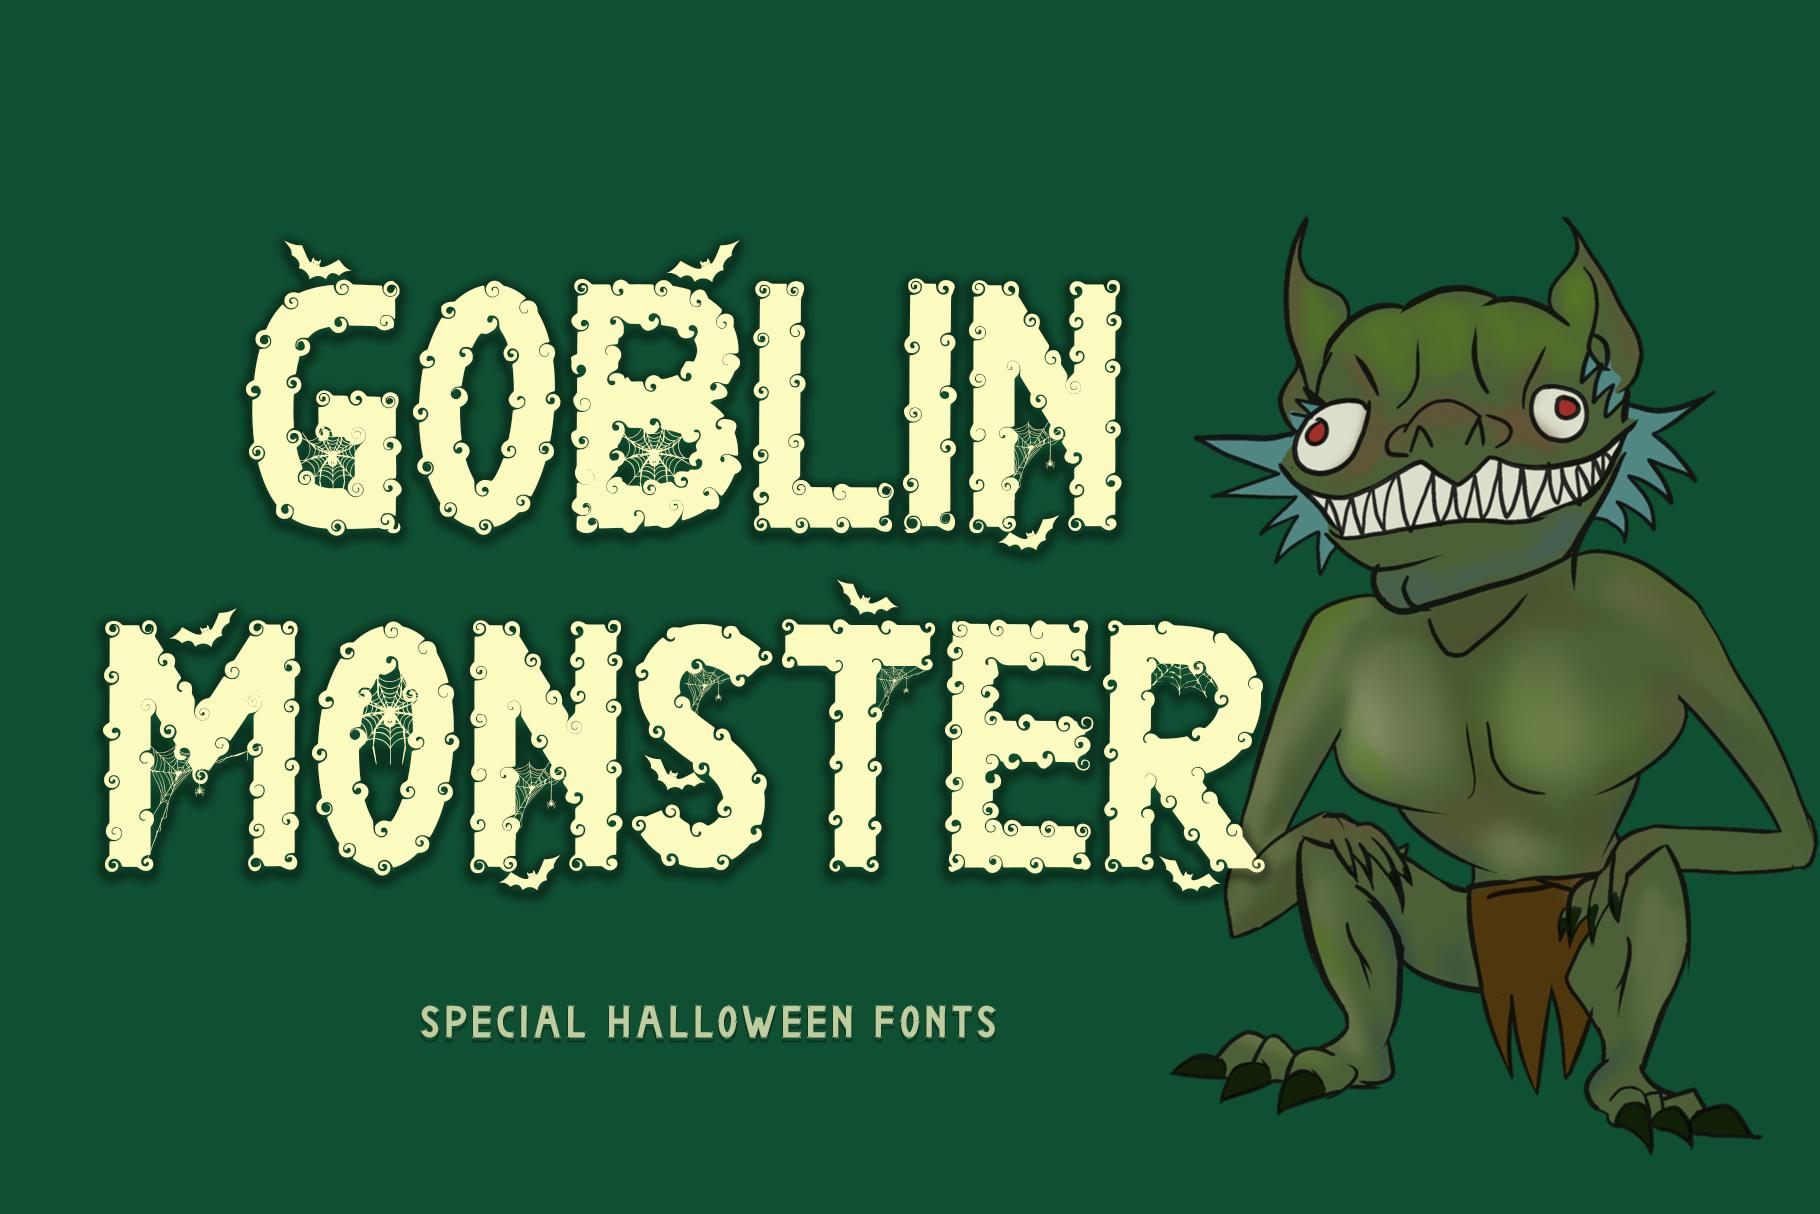 Goblin Monster Font